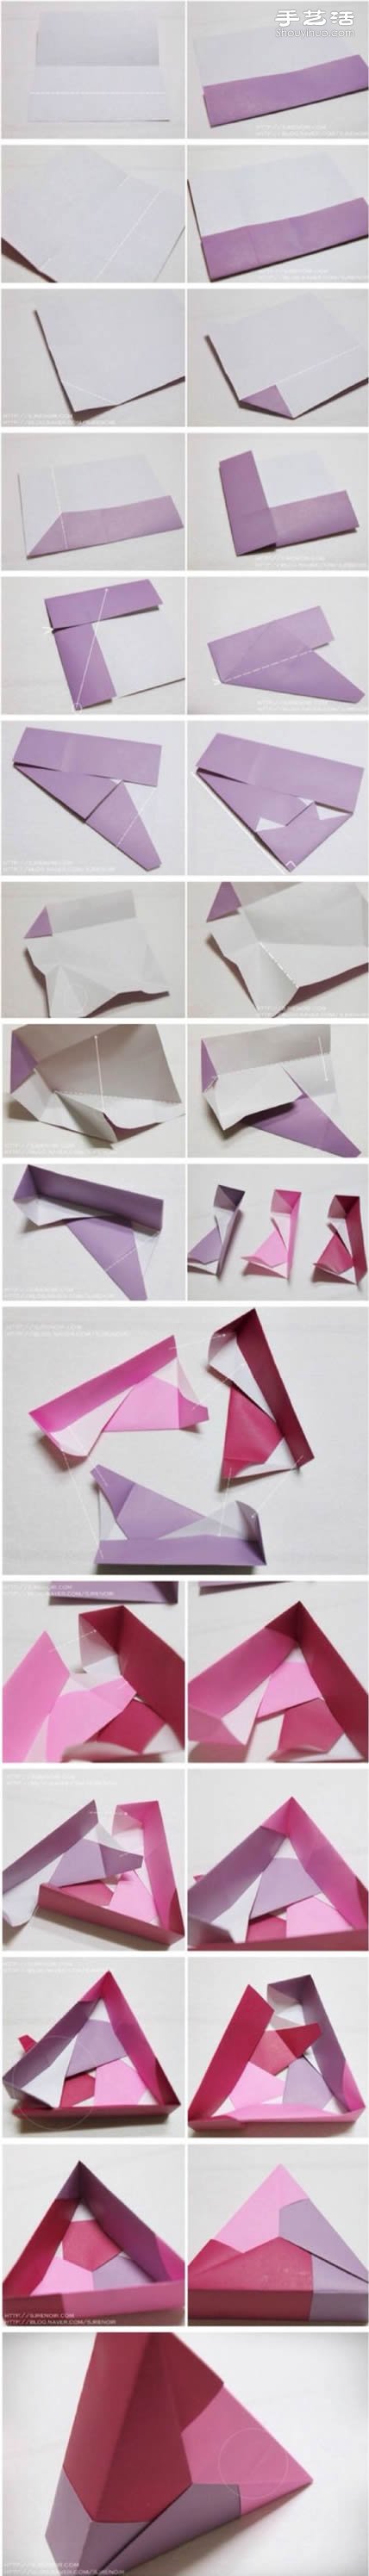 三角形纸盒包装盒糖果盒子的折法